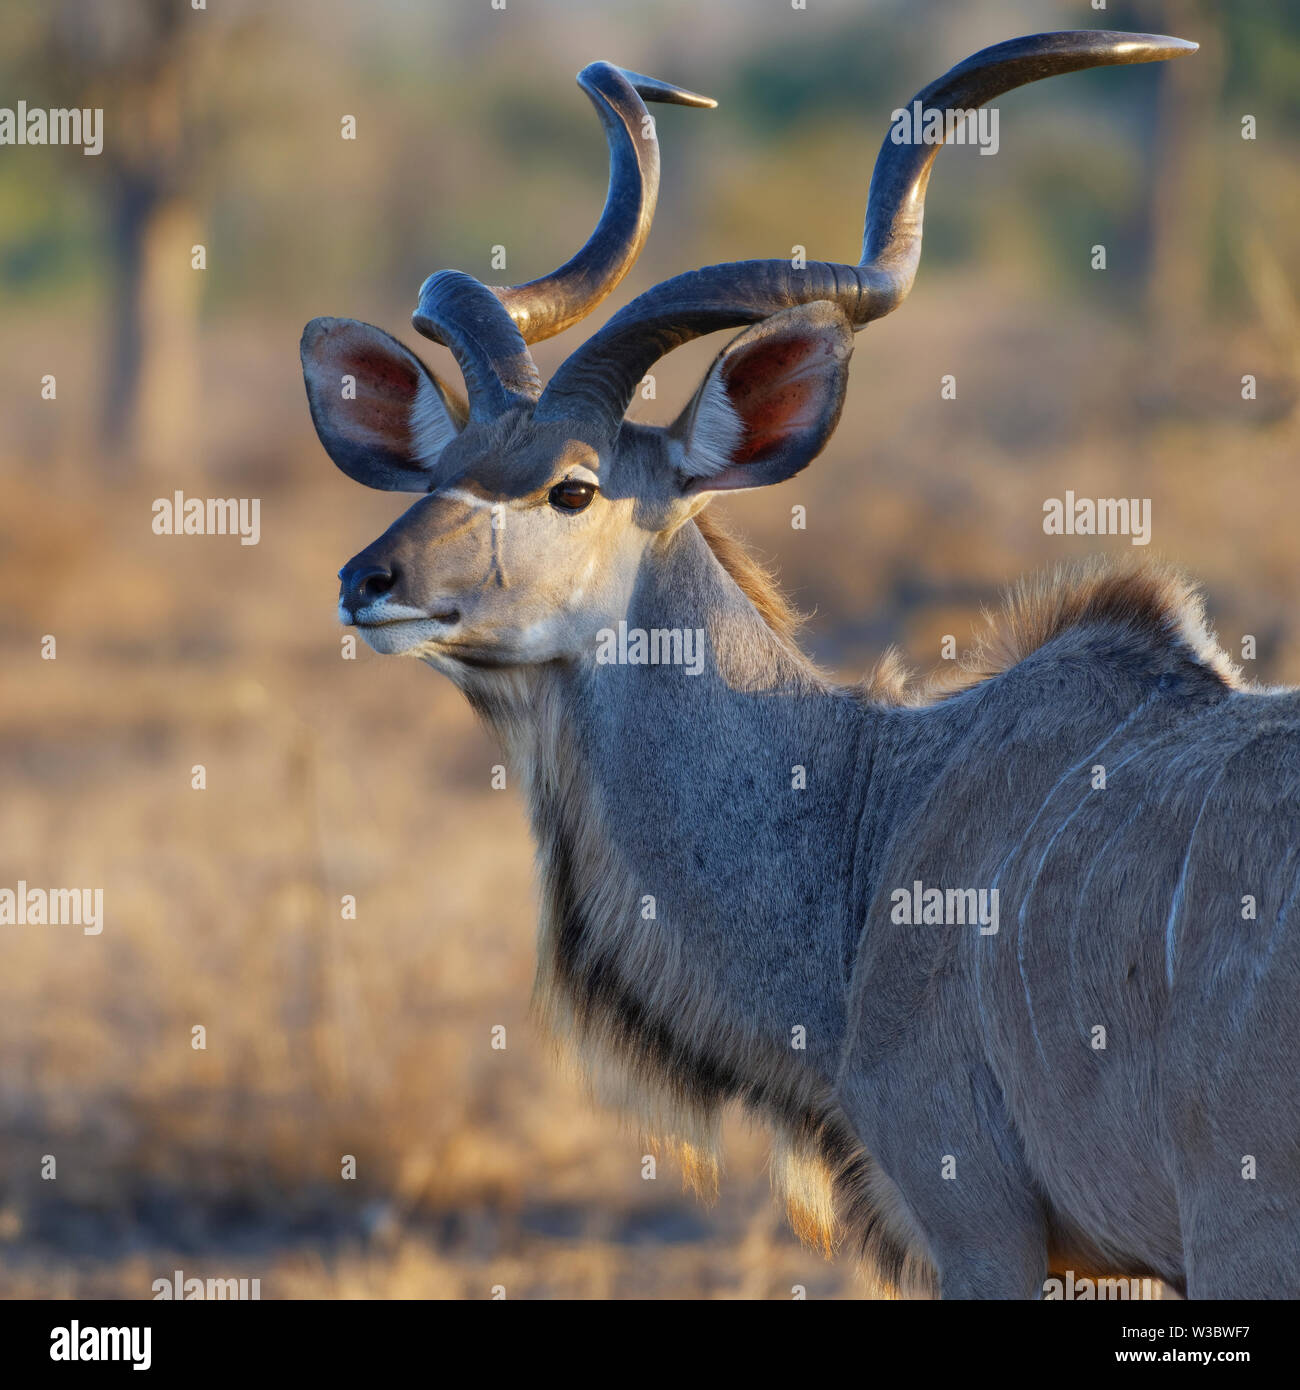 Greater kudu (Tragelaphus strepsiceros), adult male, animal portrait, evening light, Kruger National Park, South Africa, Africa Stock Photo